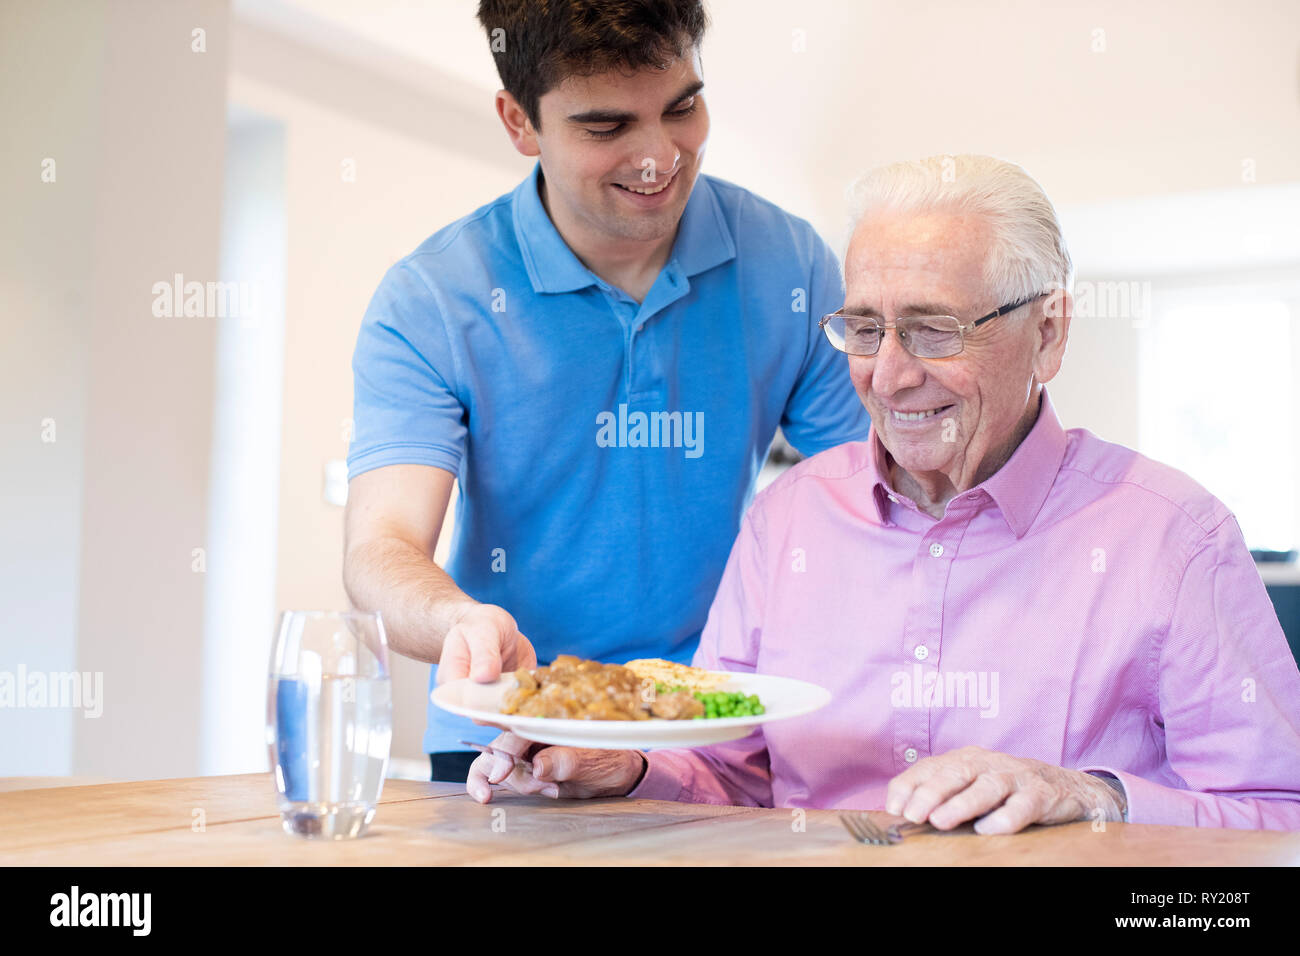 Männliche Care Assistant serviert Mahlzeiten zu den älteren männlichen Sitzen am Tisch Stockfoto